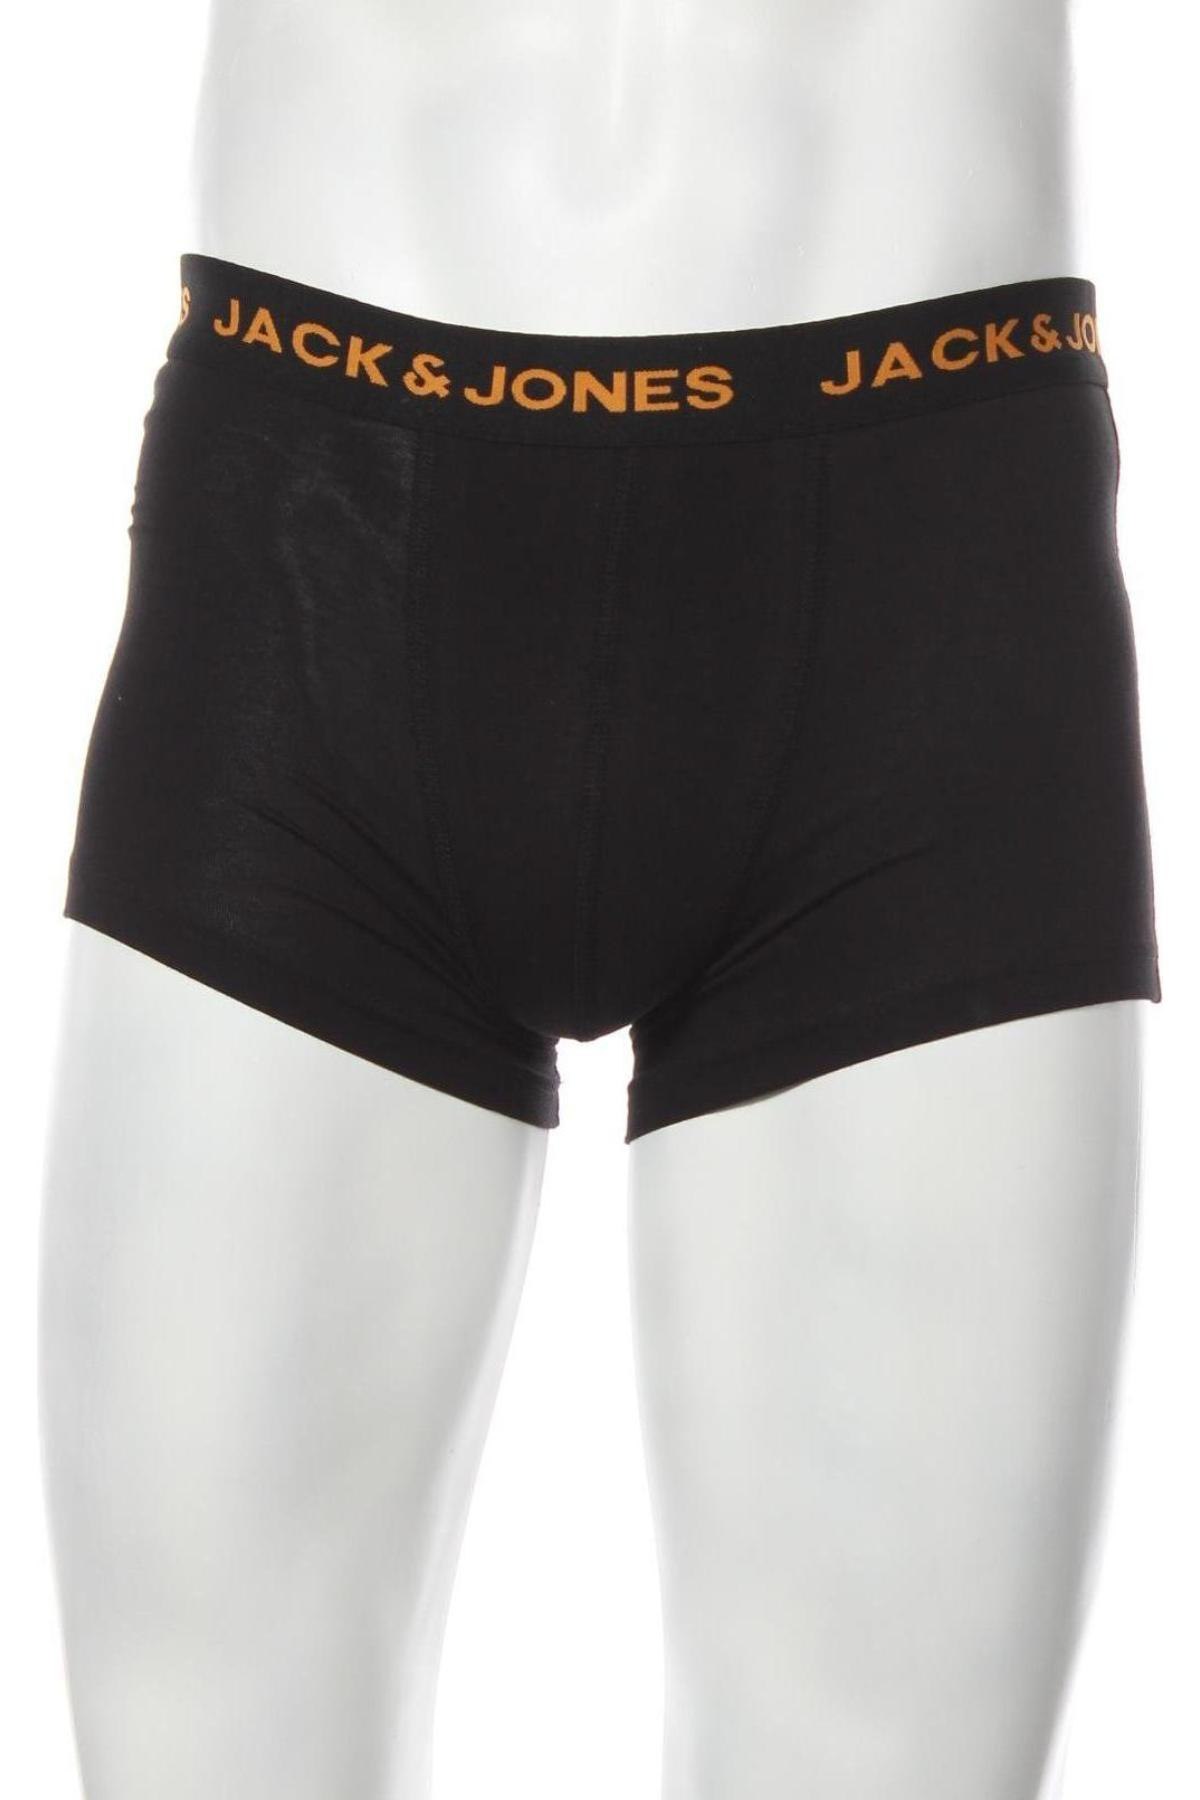 Ανδρικό σύνολο Jack & Jones, Μέγεθος S, Χρώμα Μαύρο, 95% βαμβάκι, 5% ελαστάνη, Τιμή 12,37 €